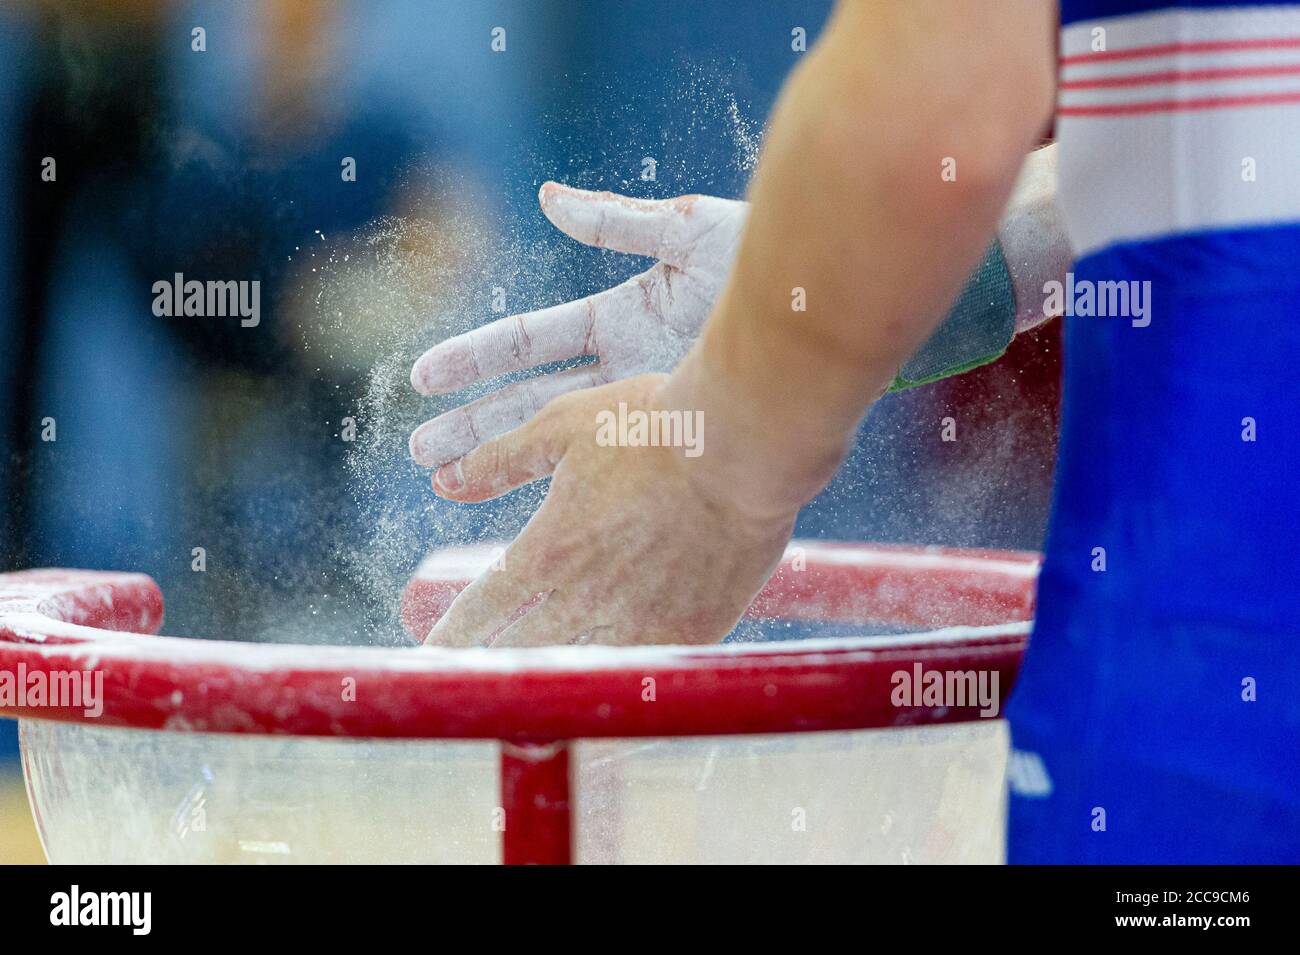 Ginnastica della nazionale francese utilizzando gesso per asciugare Le mani durante un evento di ginnastica artistica maschile Foto Stock